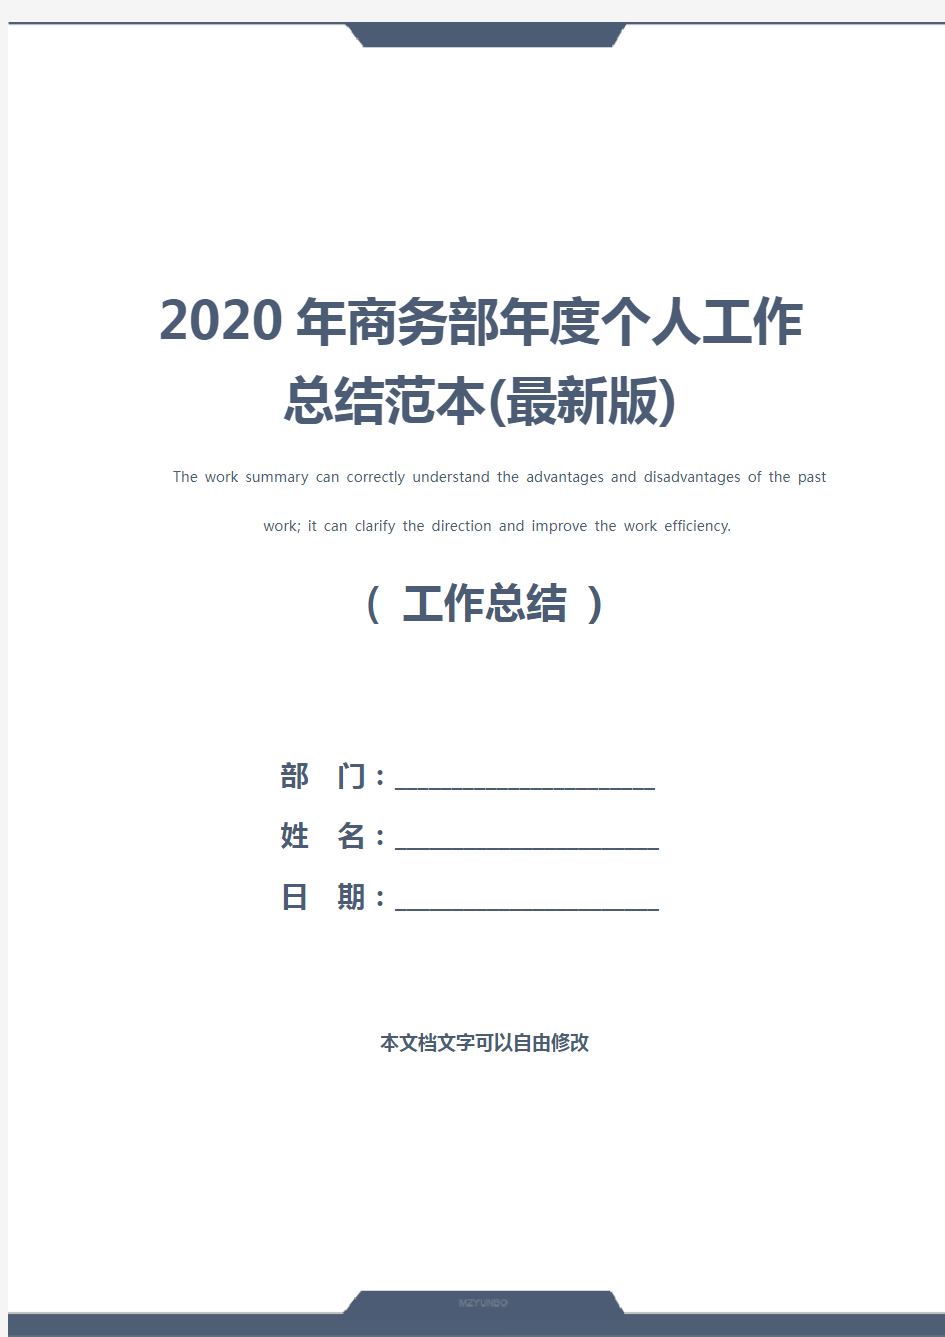 2020年商务部年度个人工作总结范本(最新版)